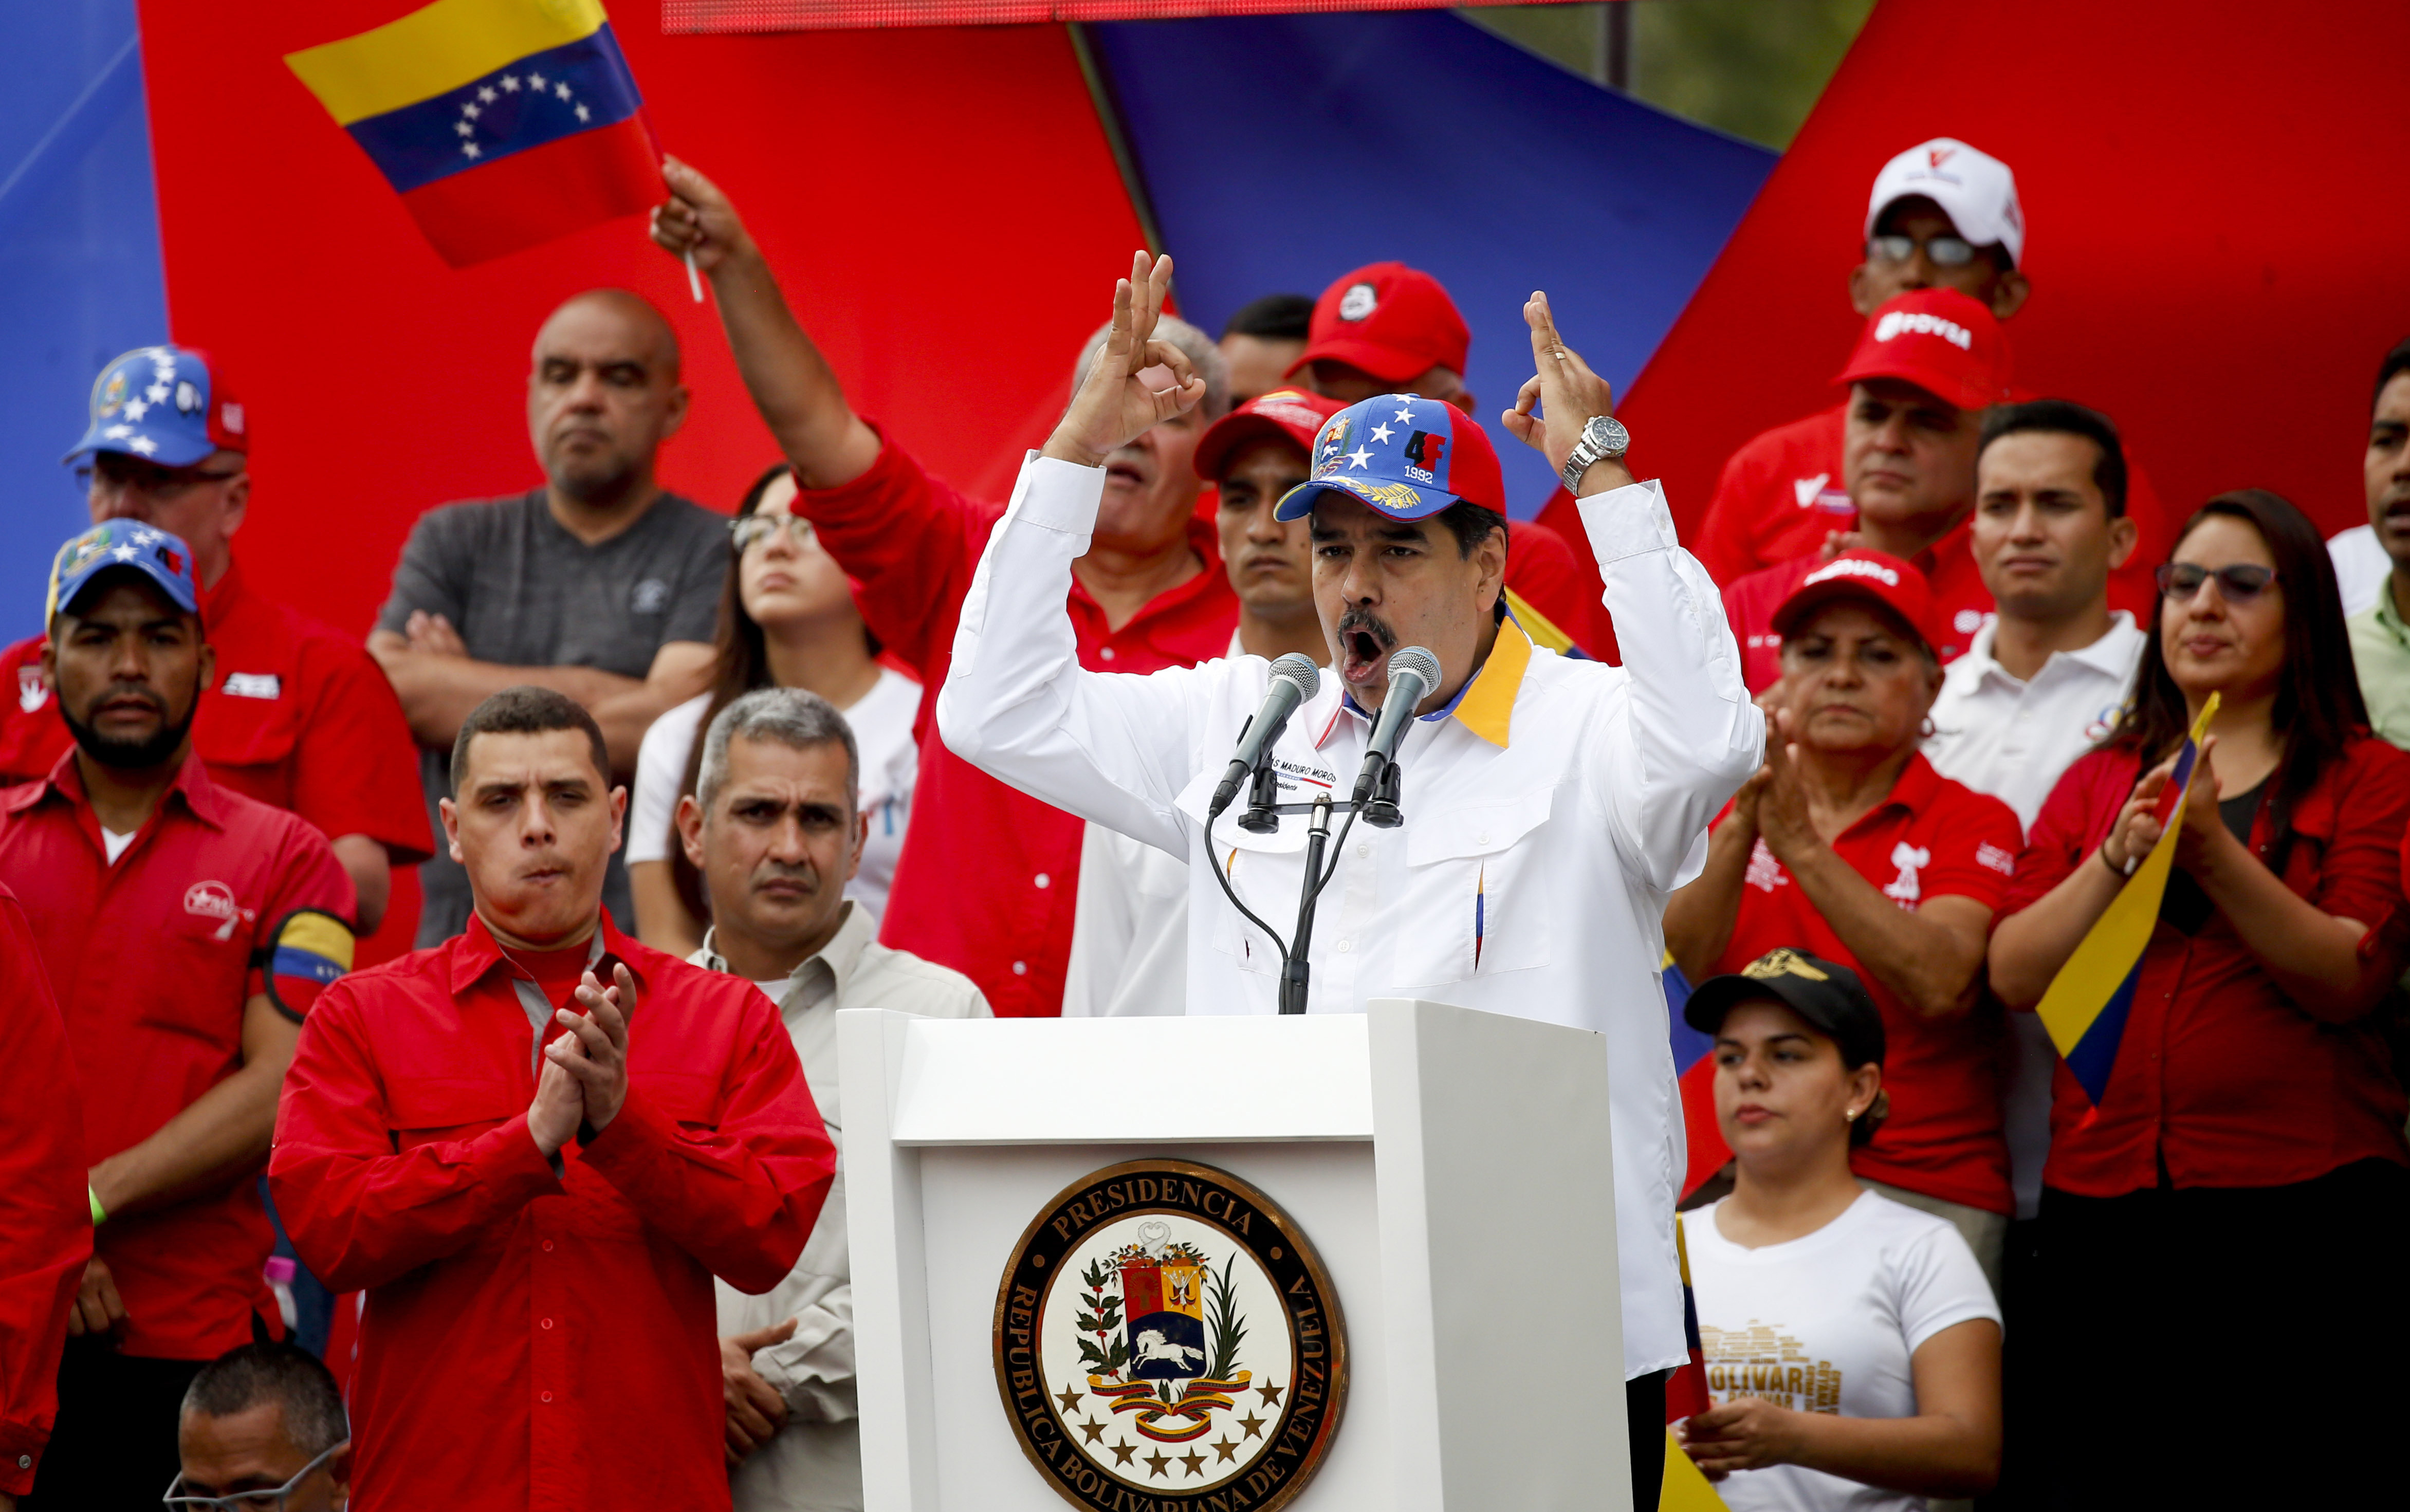 Simpatizantes del presidente venezolano, Nicolás Maduro, saldrán a las calles para "celebrar" la salida./AP